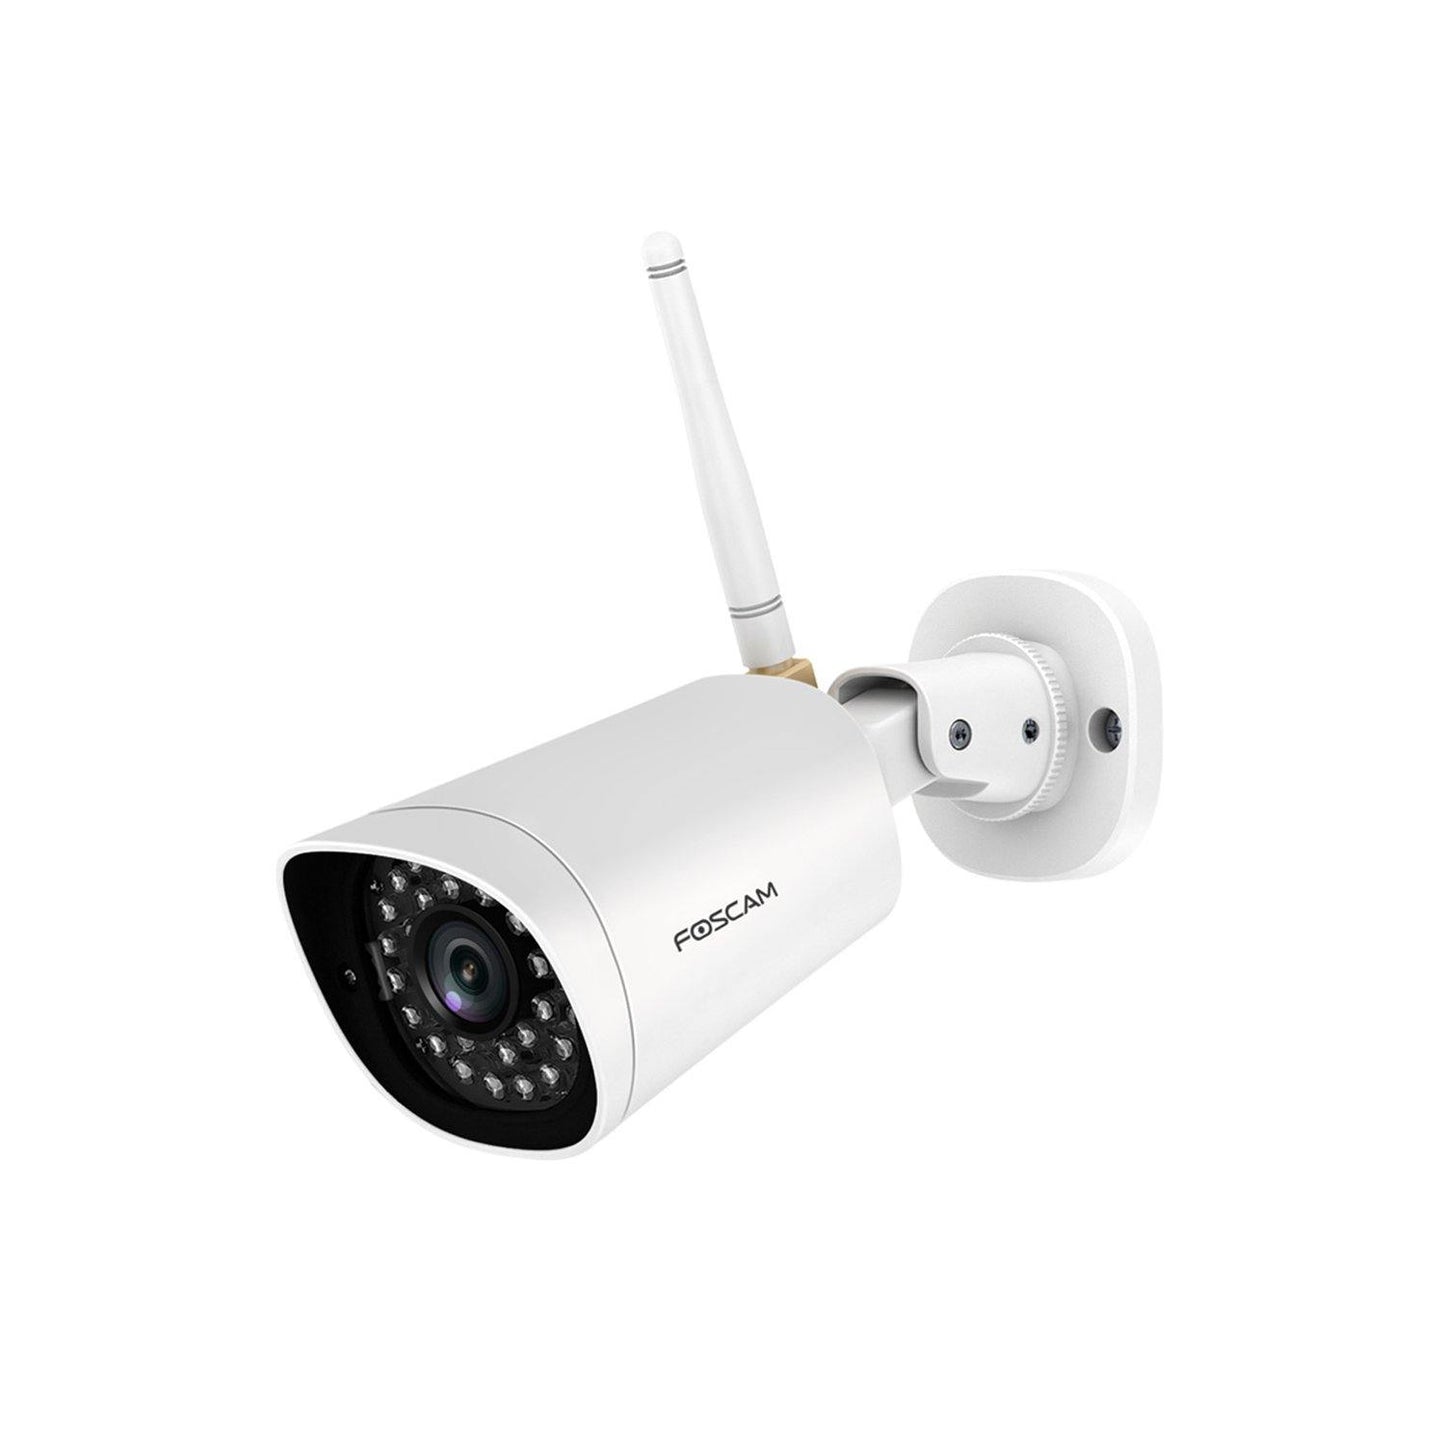 Buy 1 get 1 Free - Foscam G2 1080P WIFI Surveillance Home Camera